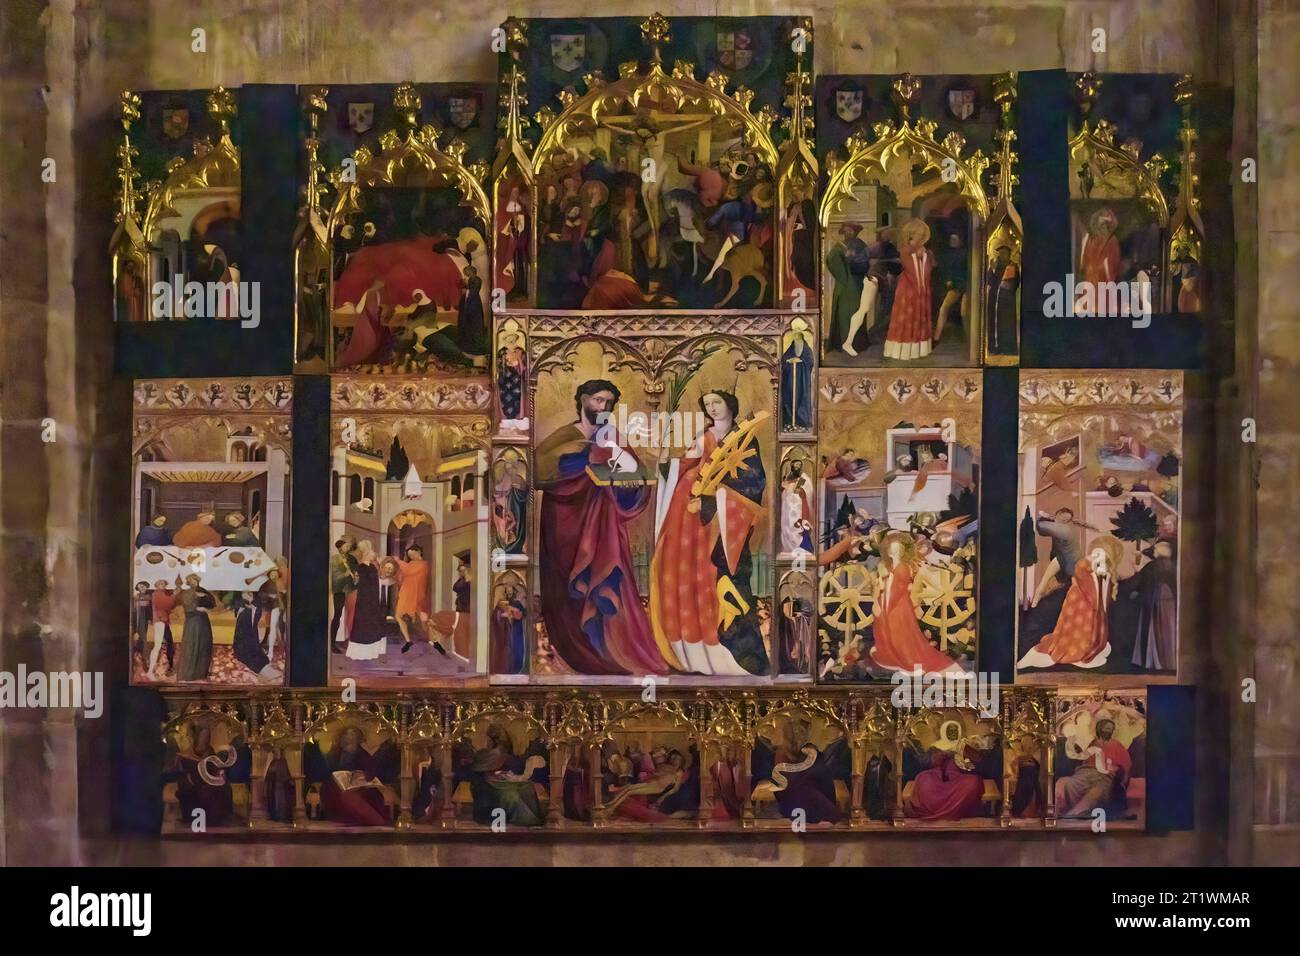 Retable de Saint Jean Baptiste et Sainte Catherine, huile sur panneau du 15e siècle dans la cathédrale Santa Maria, Sigüenza, Guadalajara, Espagne Banque D'Images